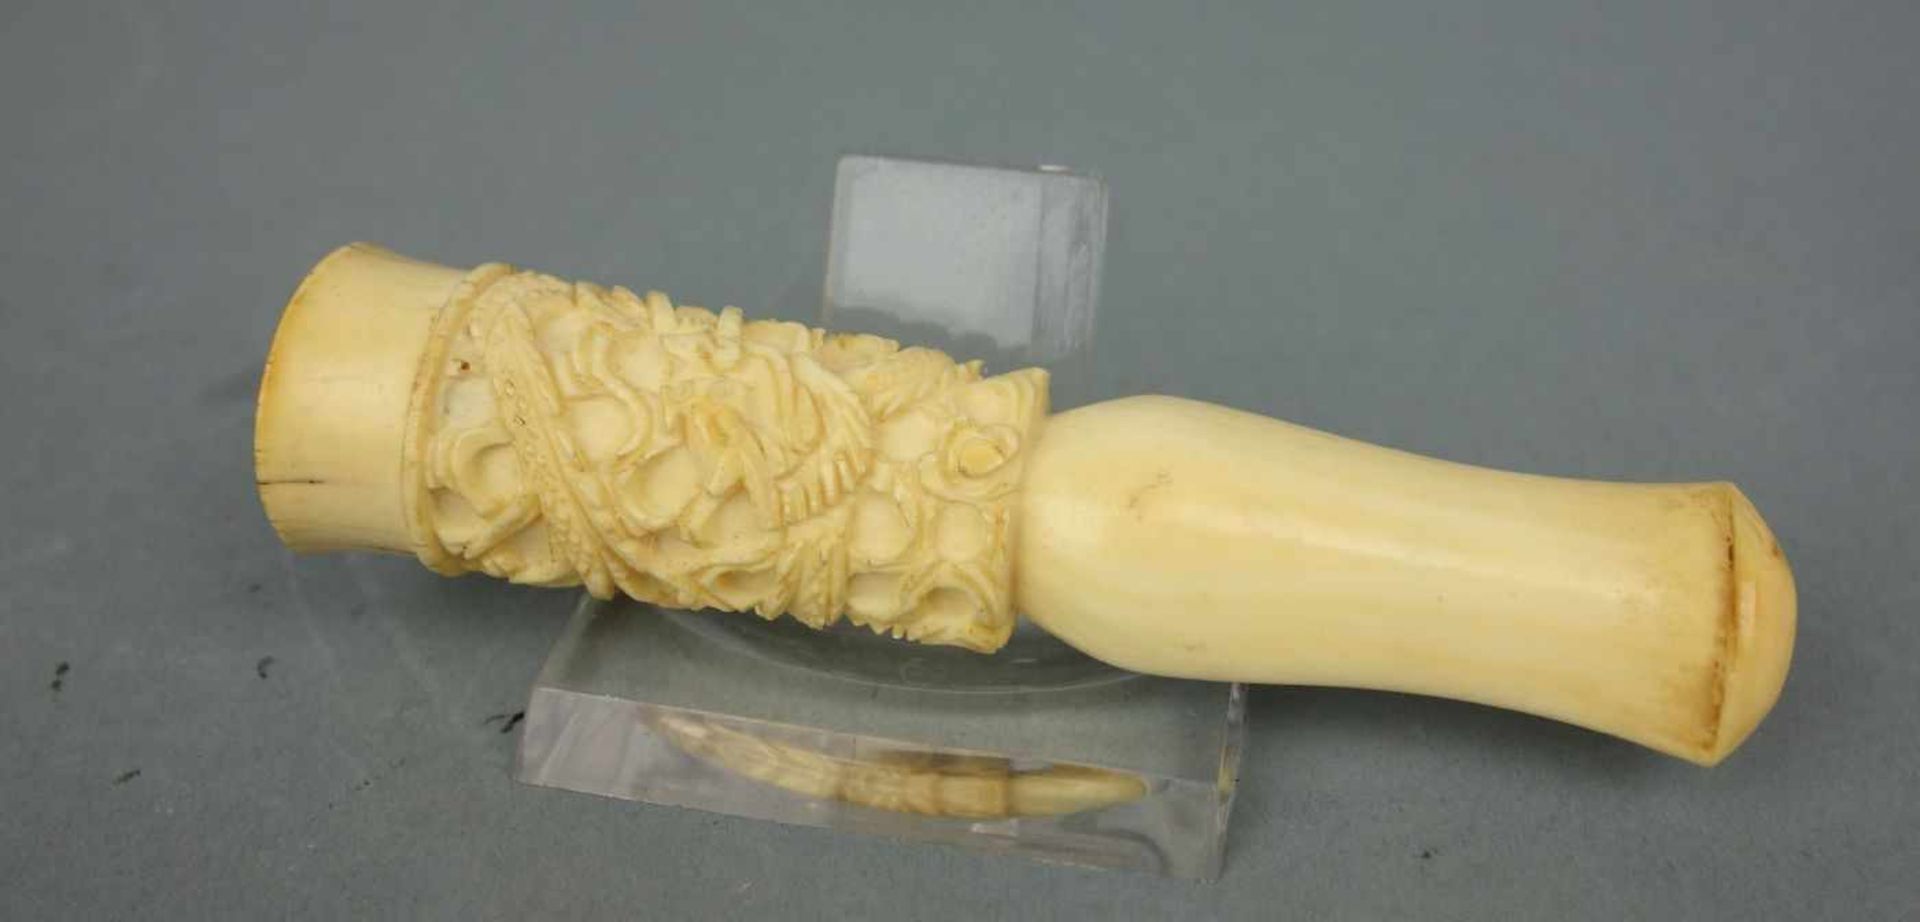 ZIGARRENSPITZE MIT DRACHEN - MOTIV / ivory cigar holder with a dragon, Elfenbein, China, späte - Image 2 of 5